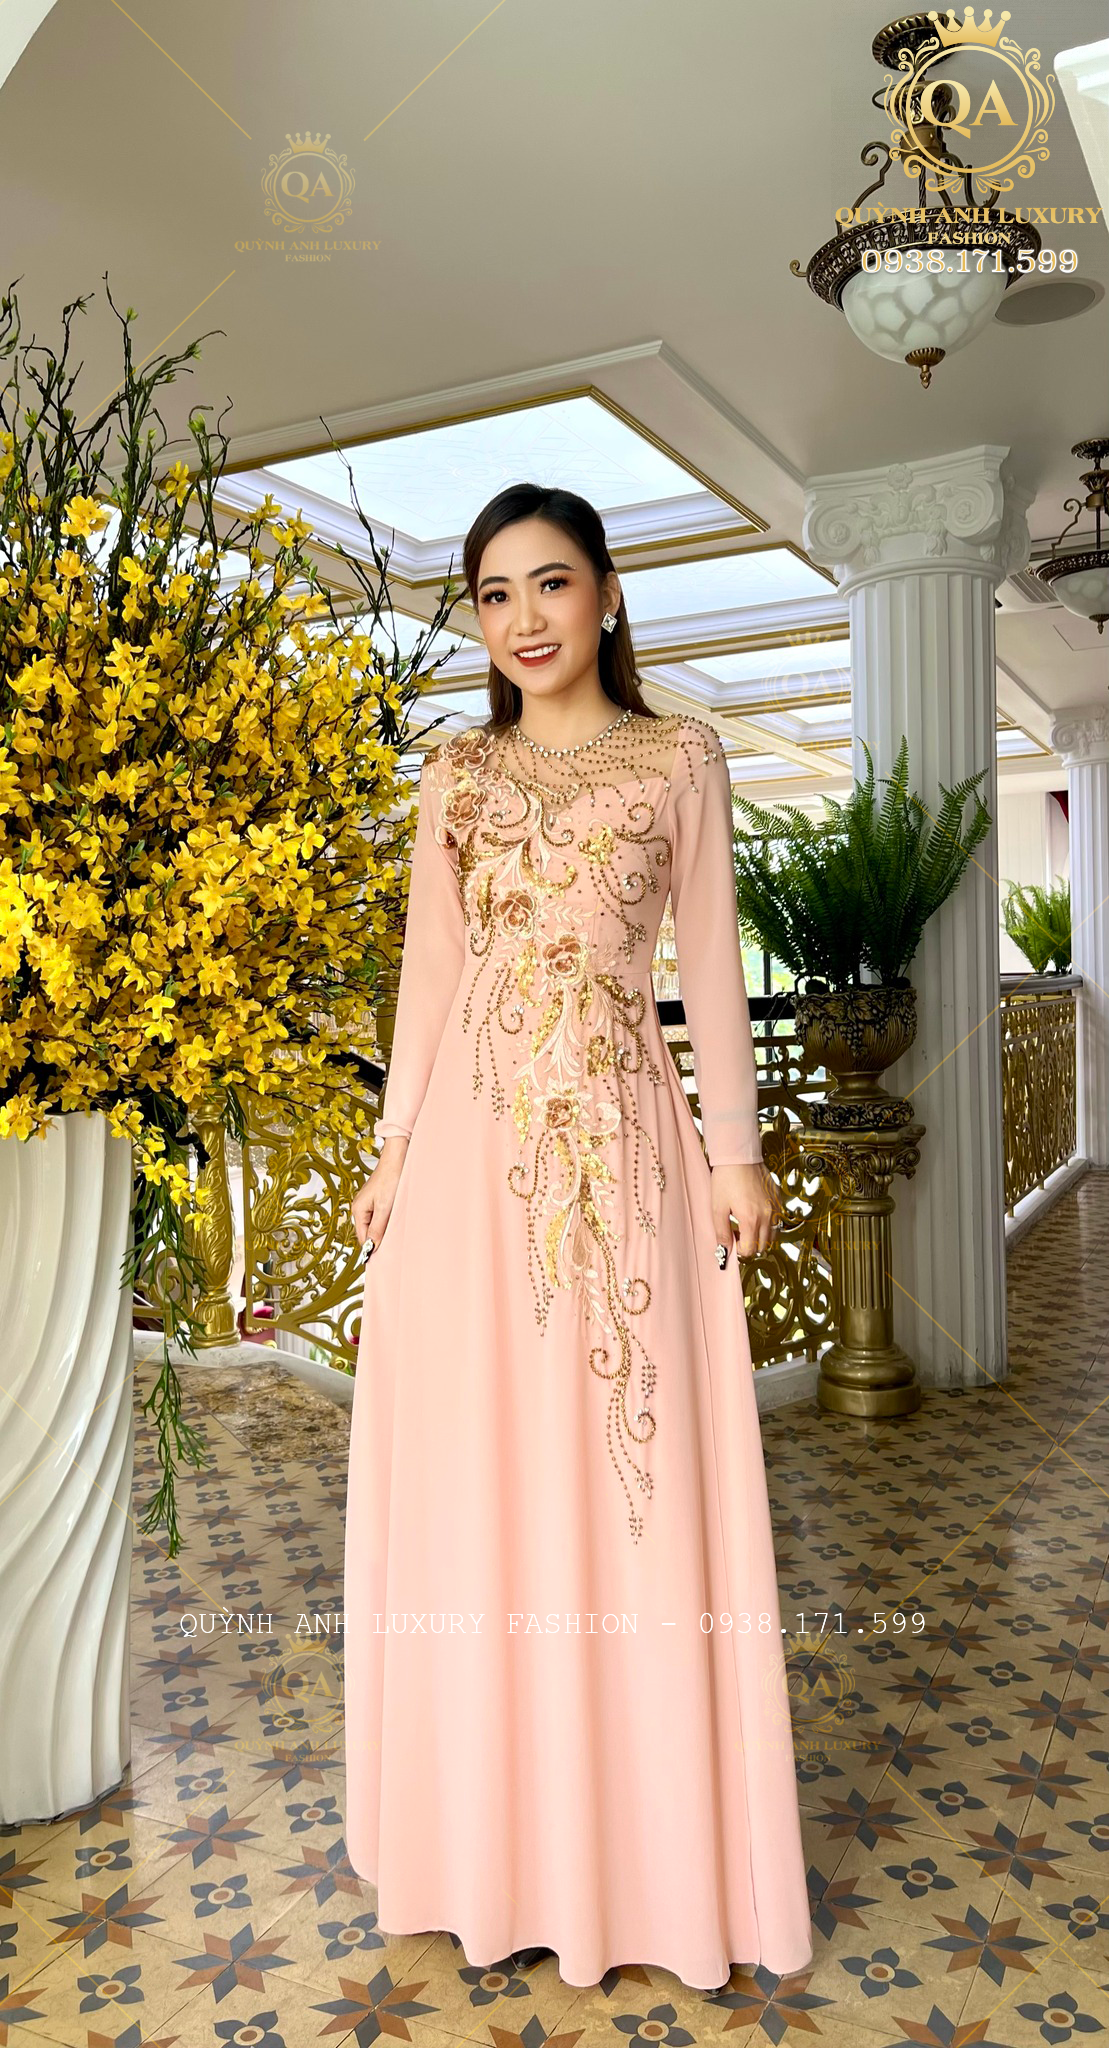 Quỳnh Anh Luxury và mẫu áo dài trung niên đẹp nhất cho dịp cuối năm